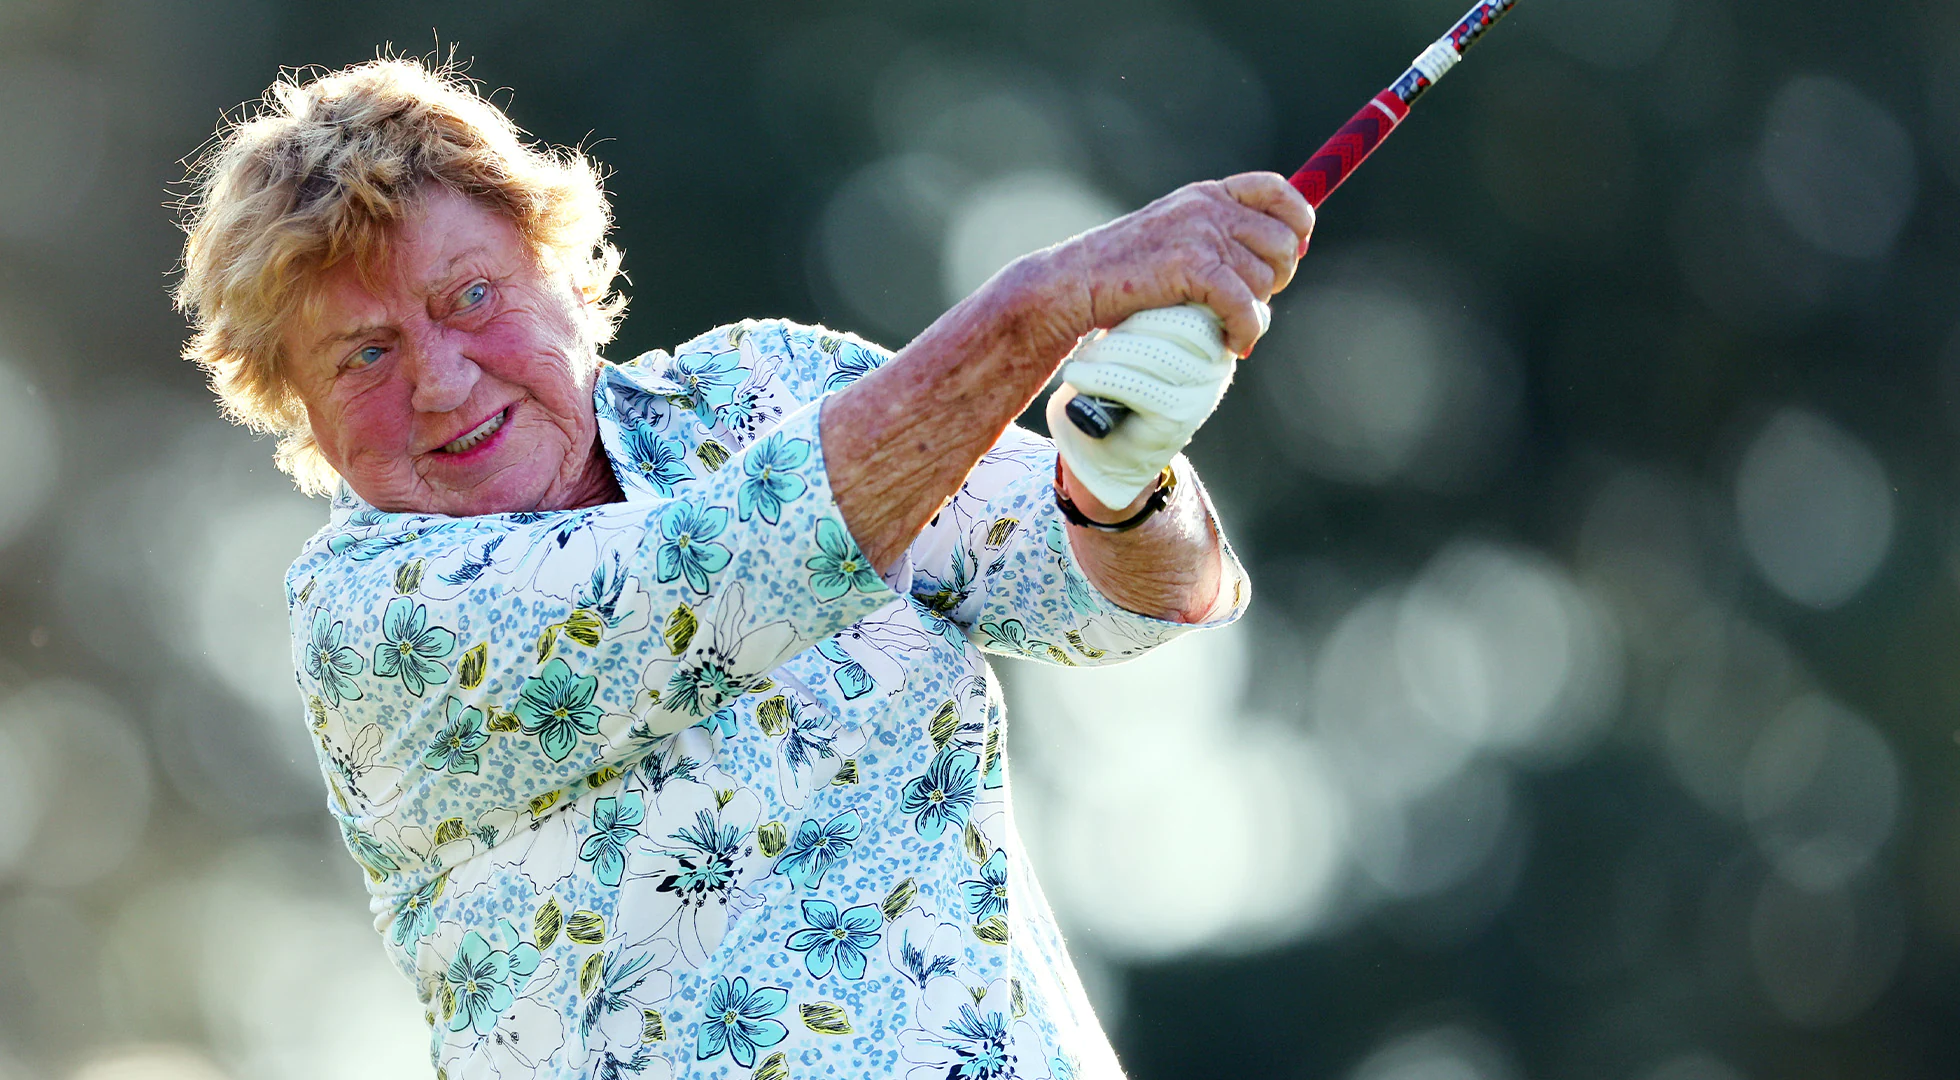 JoAnne Carner, 82, sets records at U.S. Senior Women’s Open despite missing cut